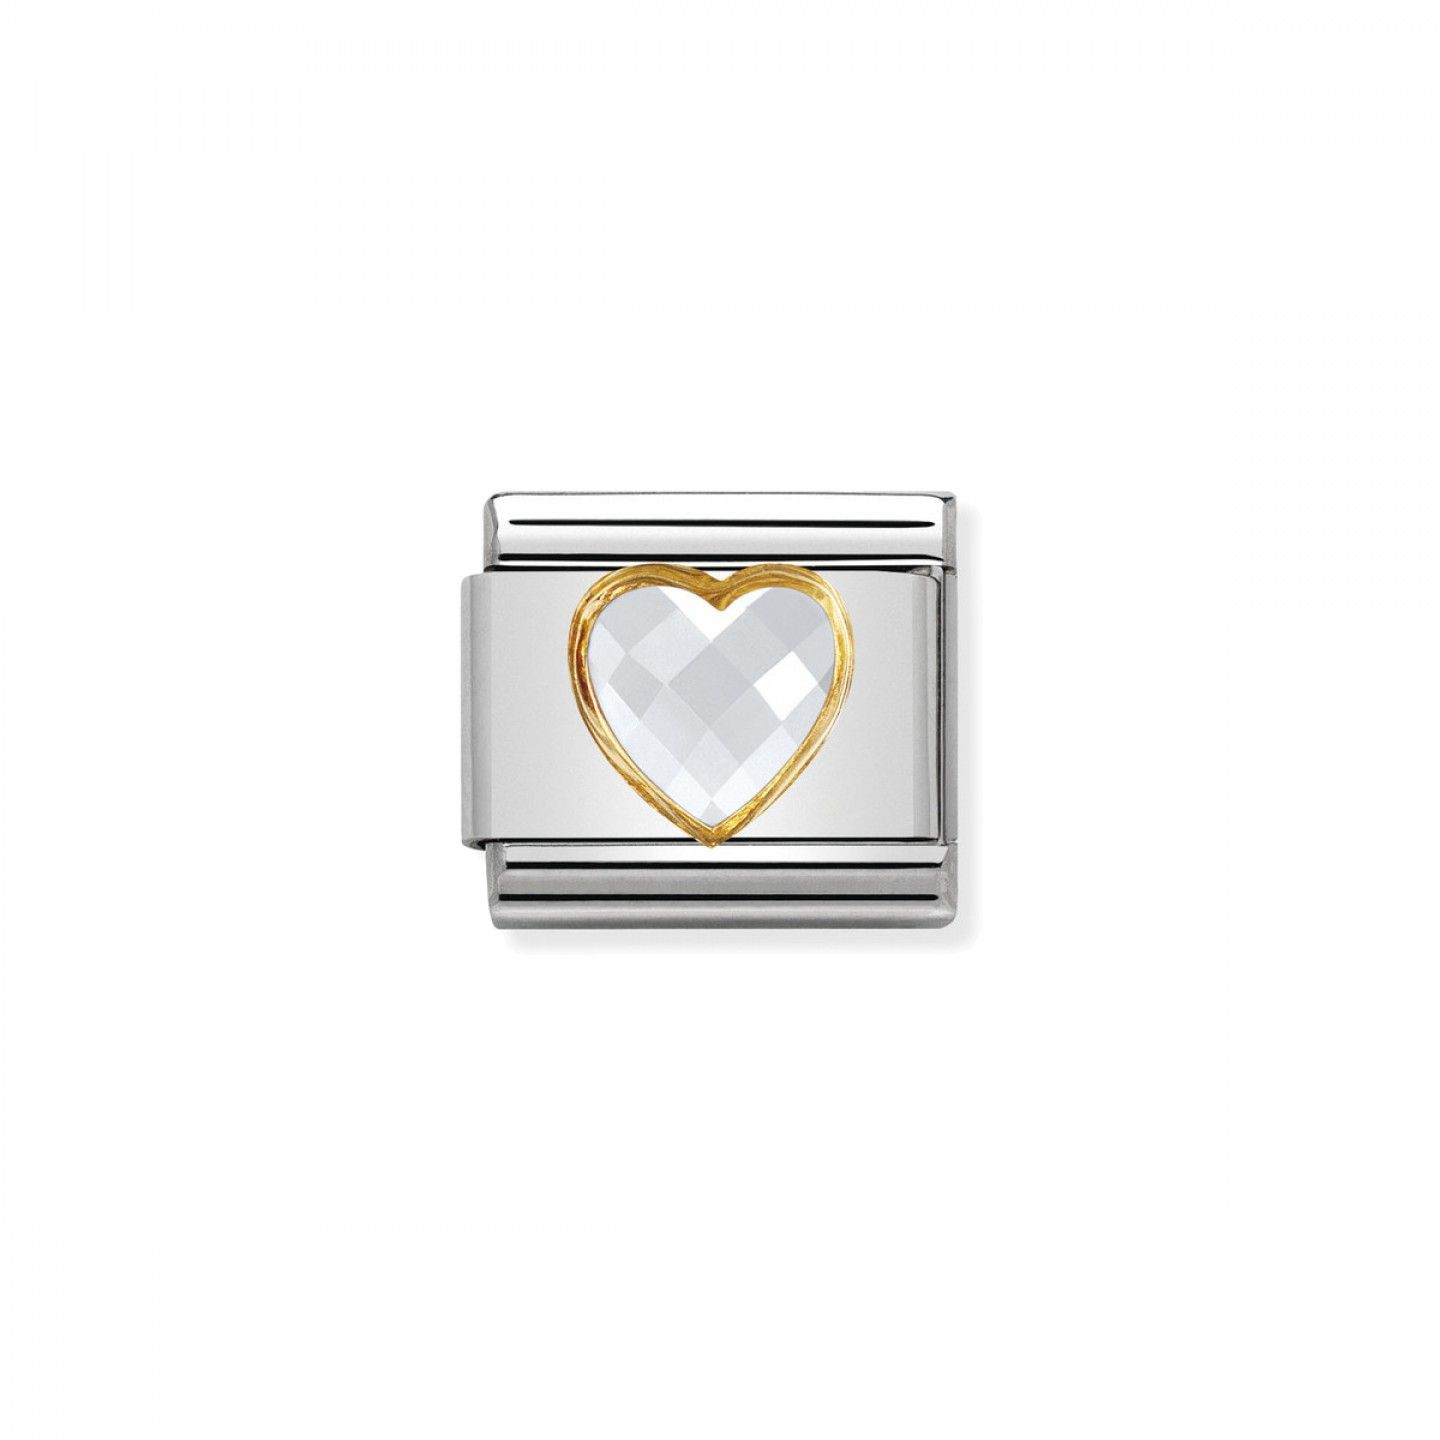 Charm Link NOMINATION, Ouro 18K, Pedra coração branco